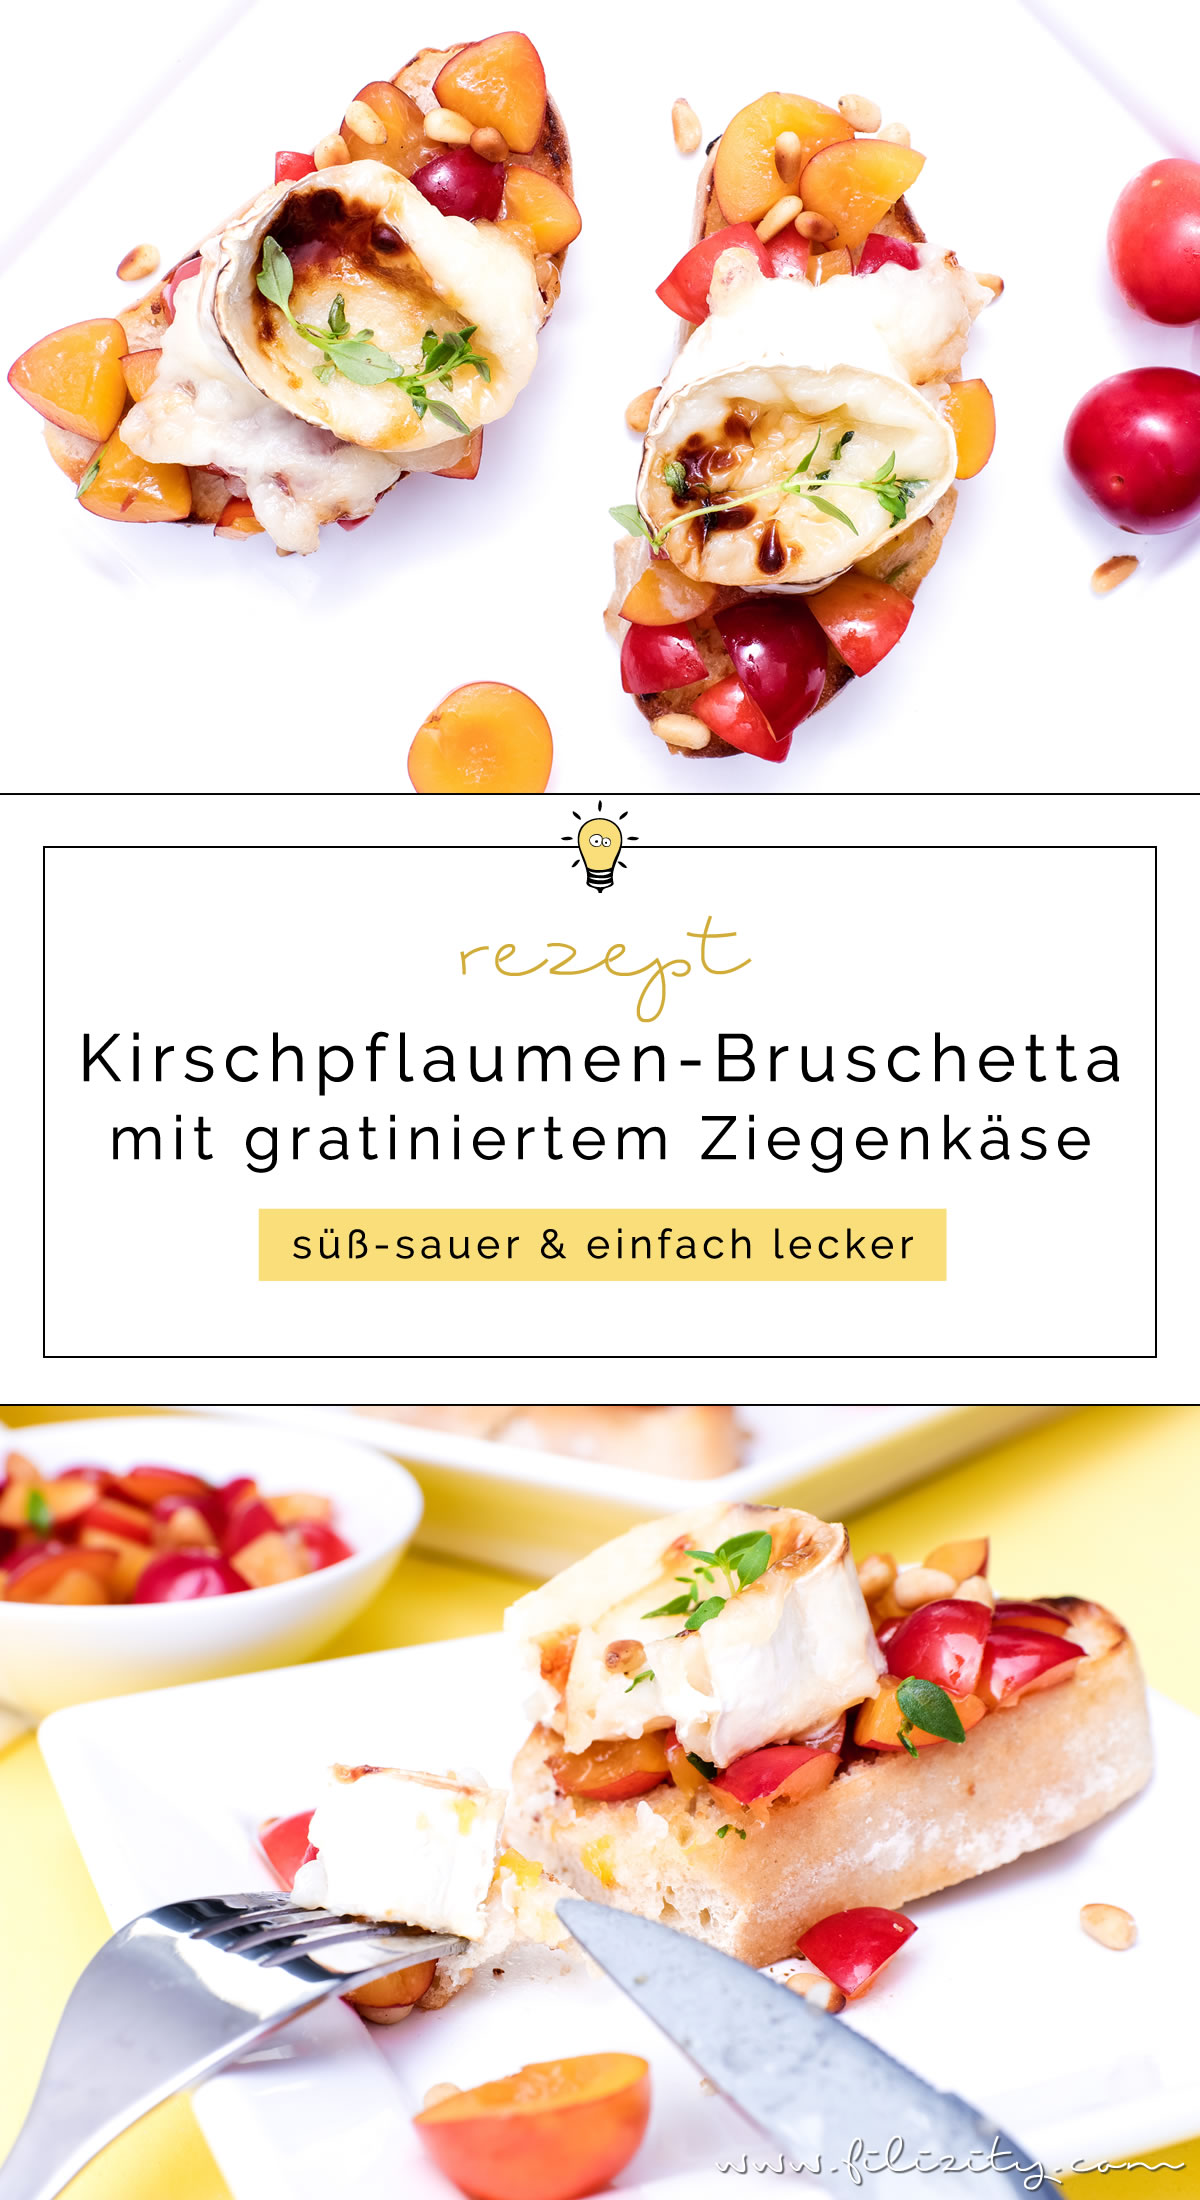 Rezept für Mirabellen- oder Kirschpflaumen-Bruschetta mit gratiniertem Ziegenkäse, Thymian und Pinienkernen | Filizity.com | Food-Blog aus dem Rheinland #sommer #herbst #brot